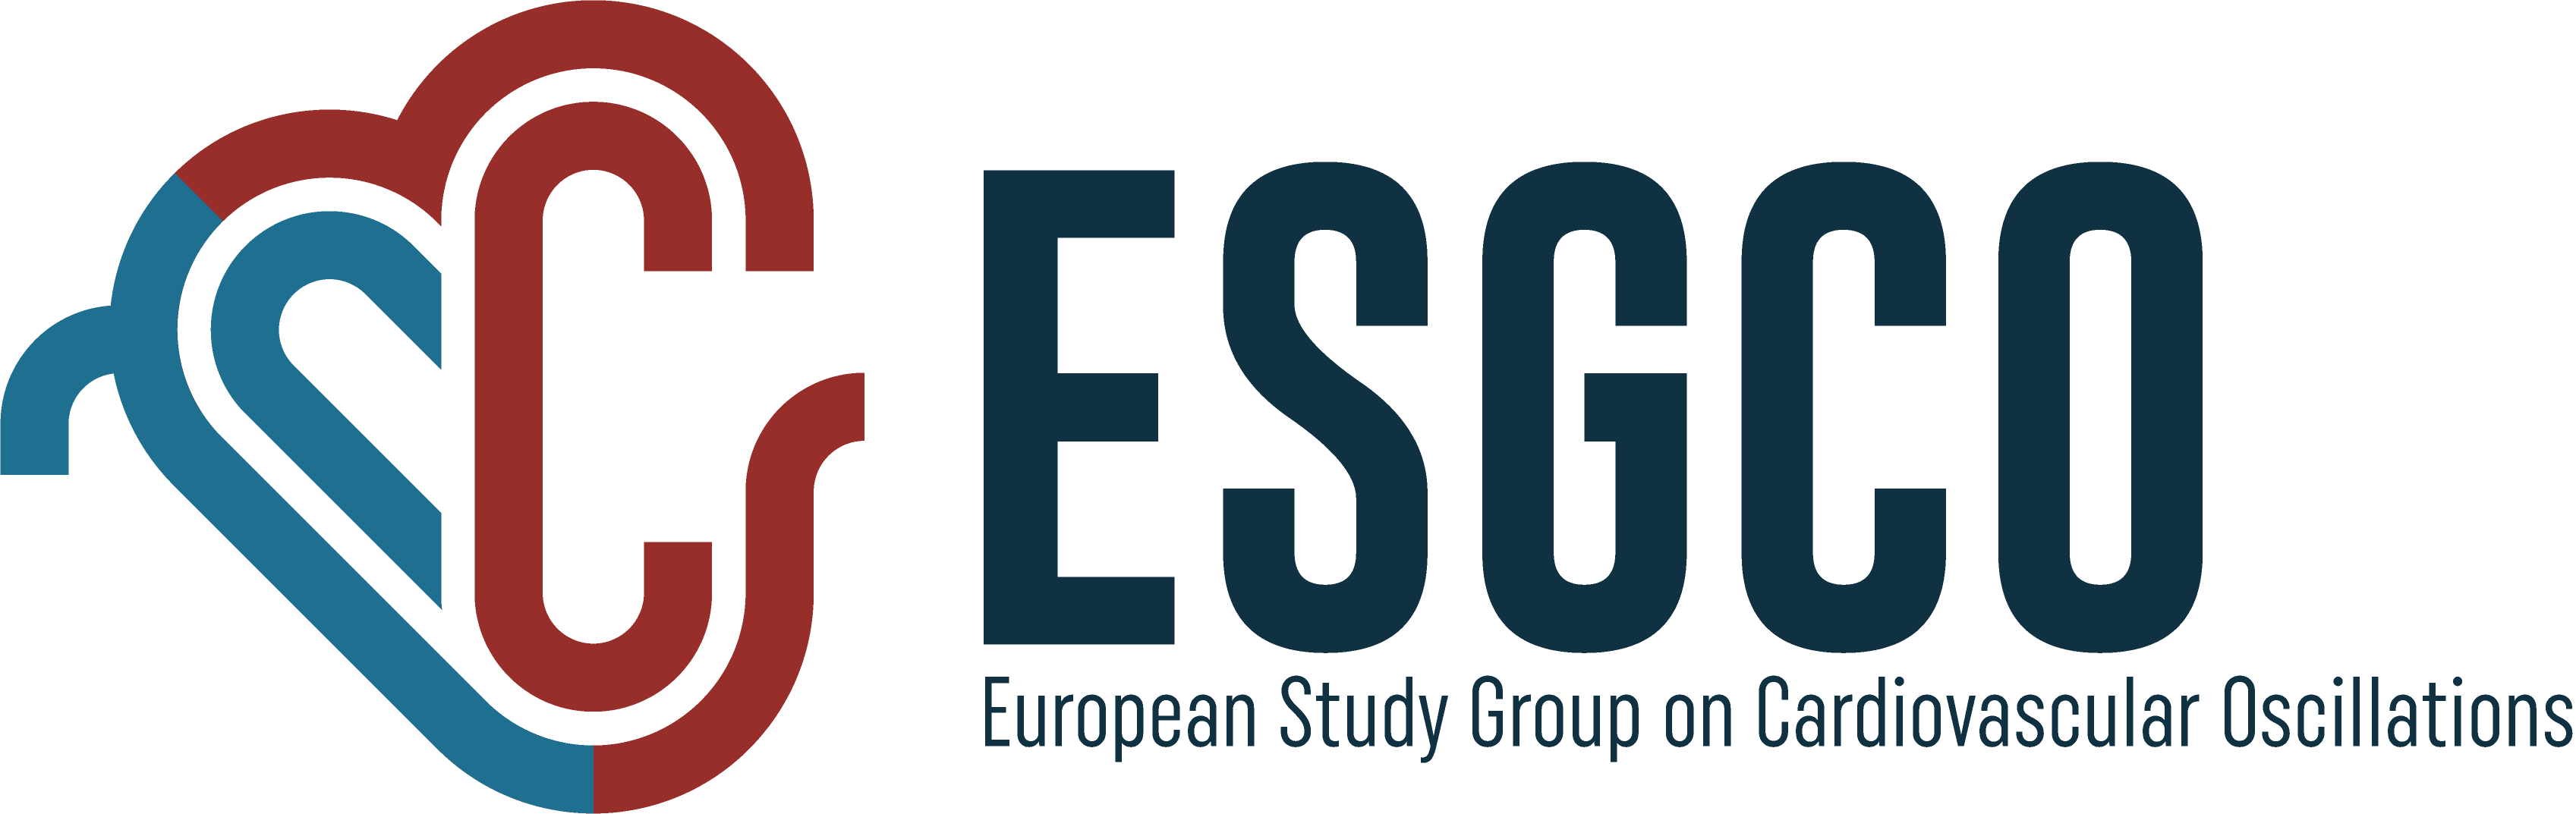 logo ESGCO